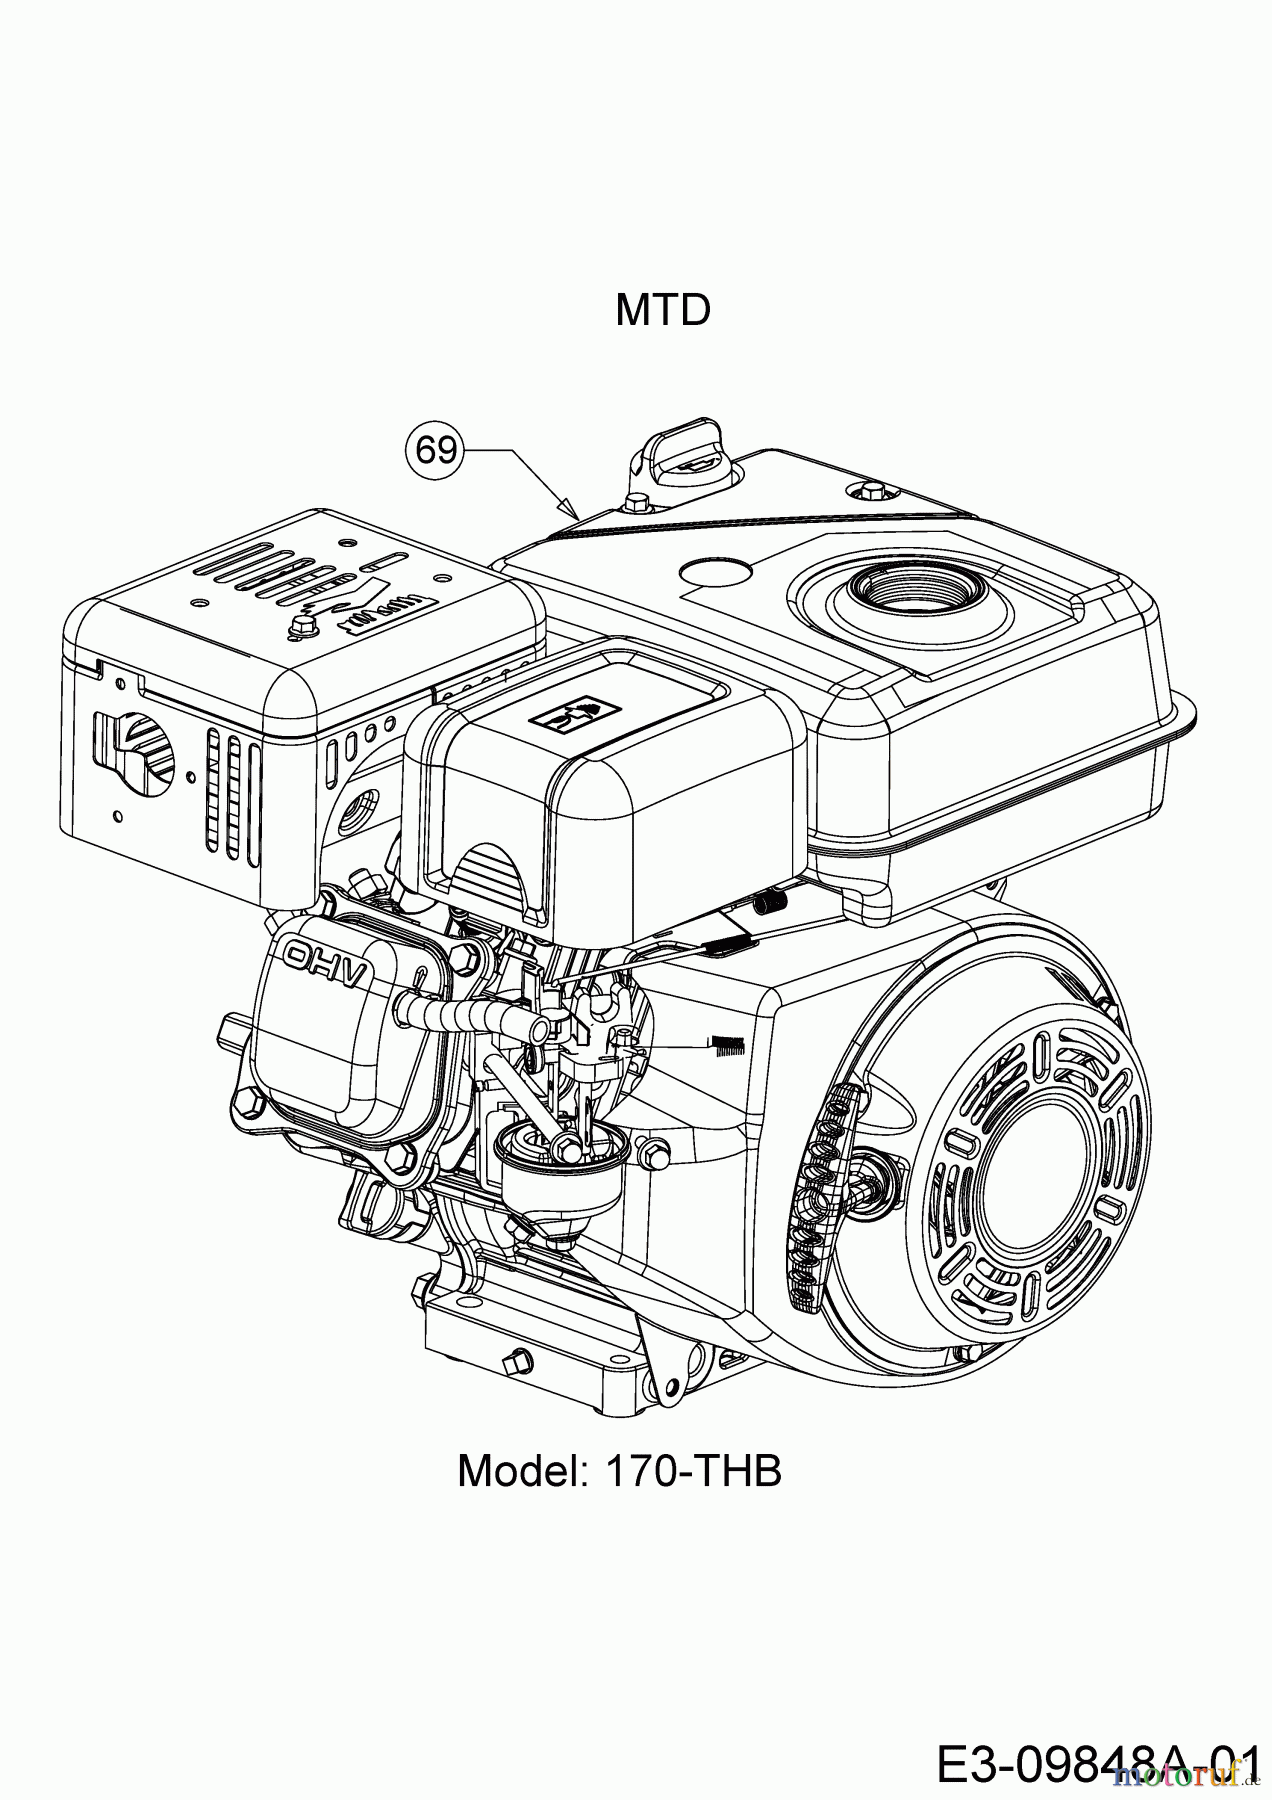  MTD Tillers T/405 M 21AA46M3678  (2016) Engine MTD